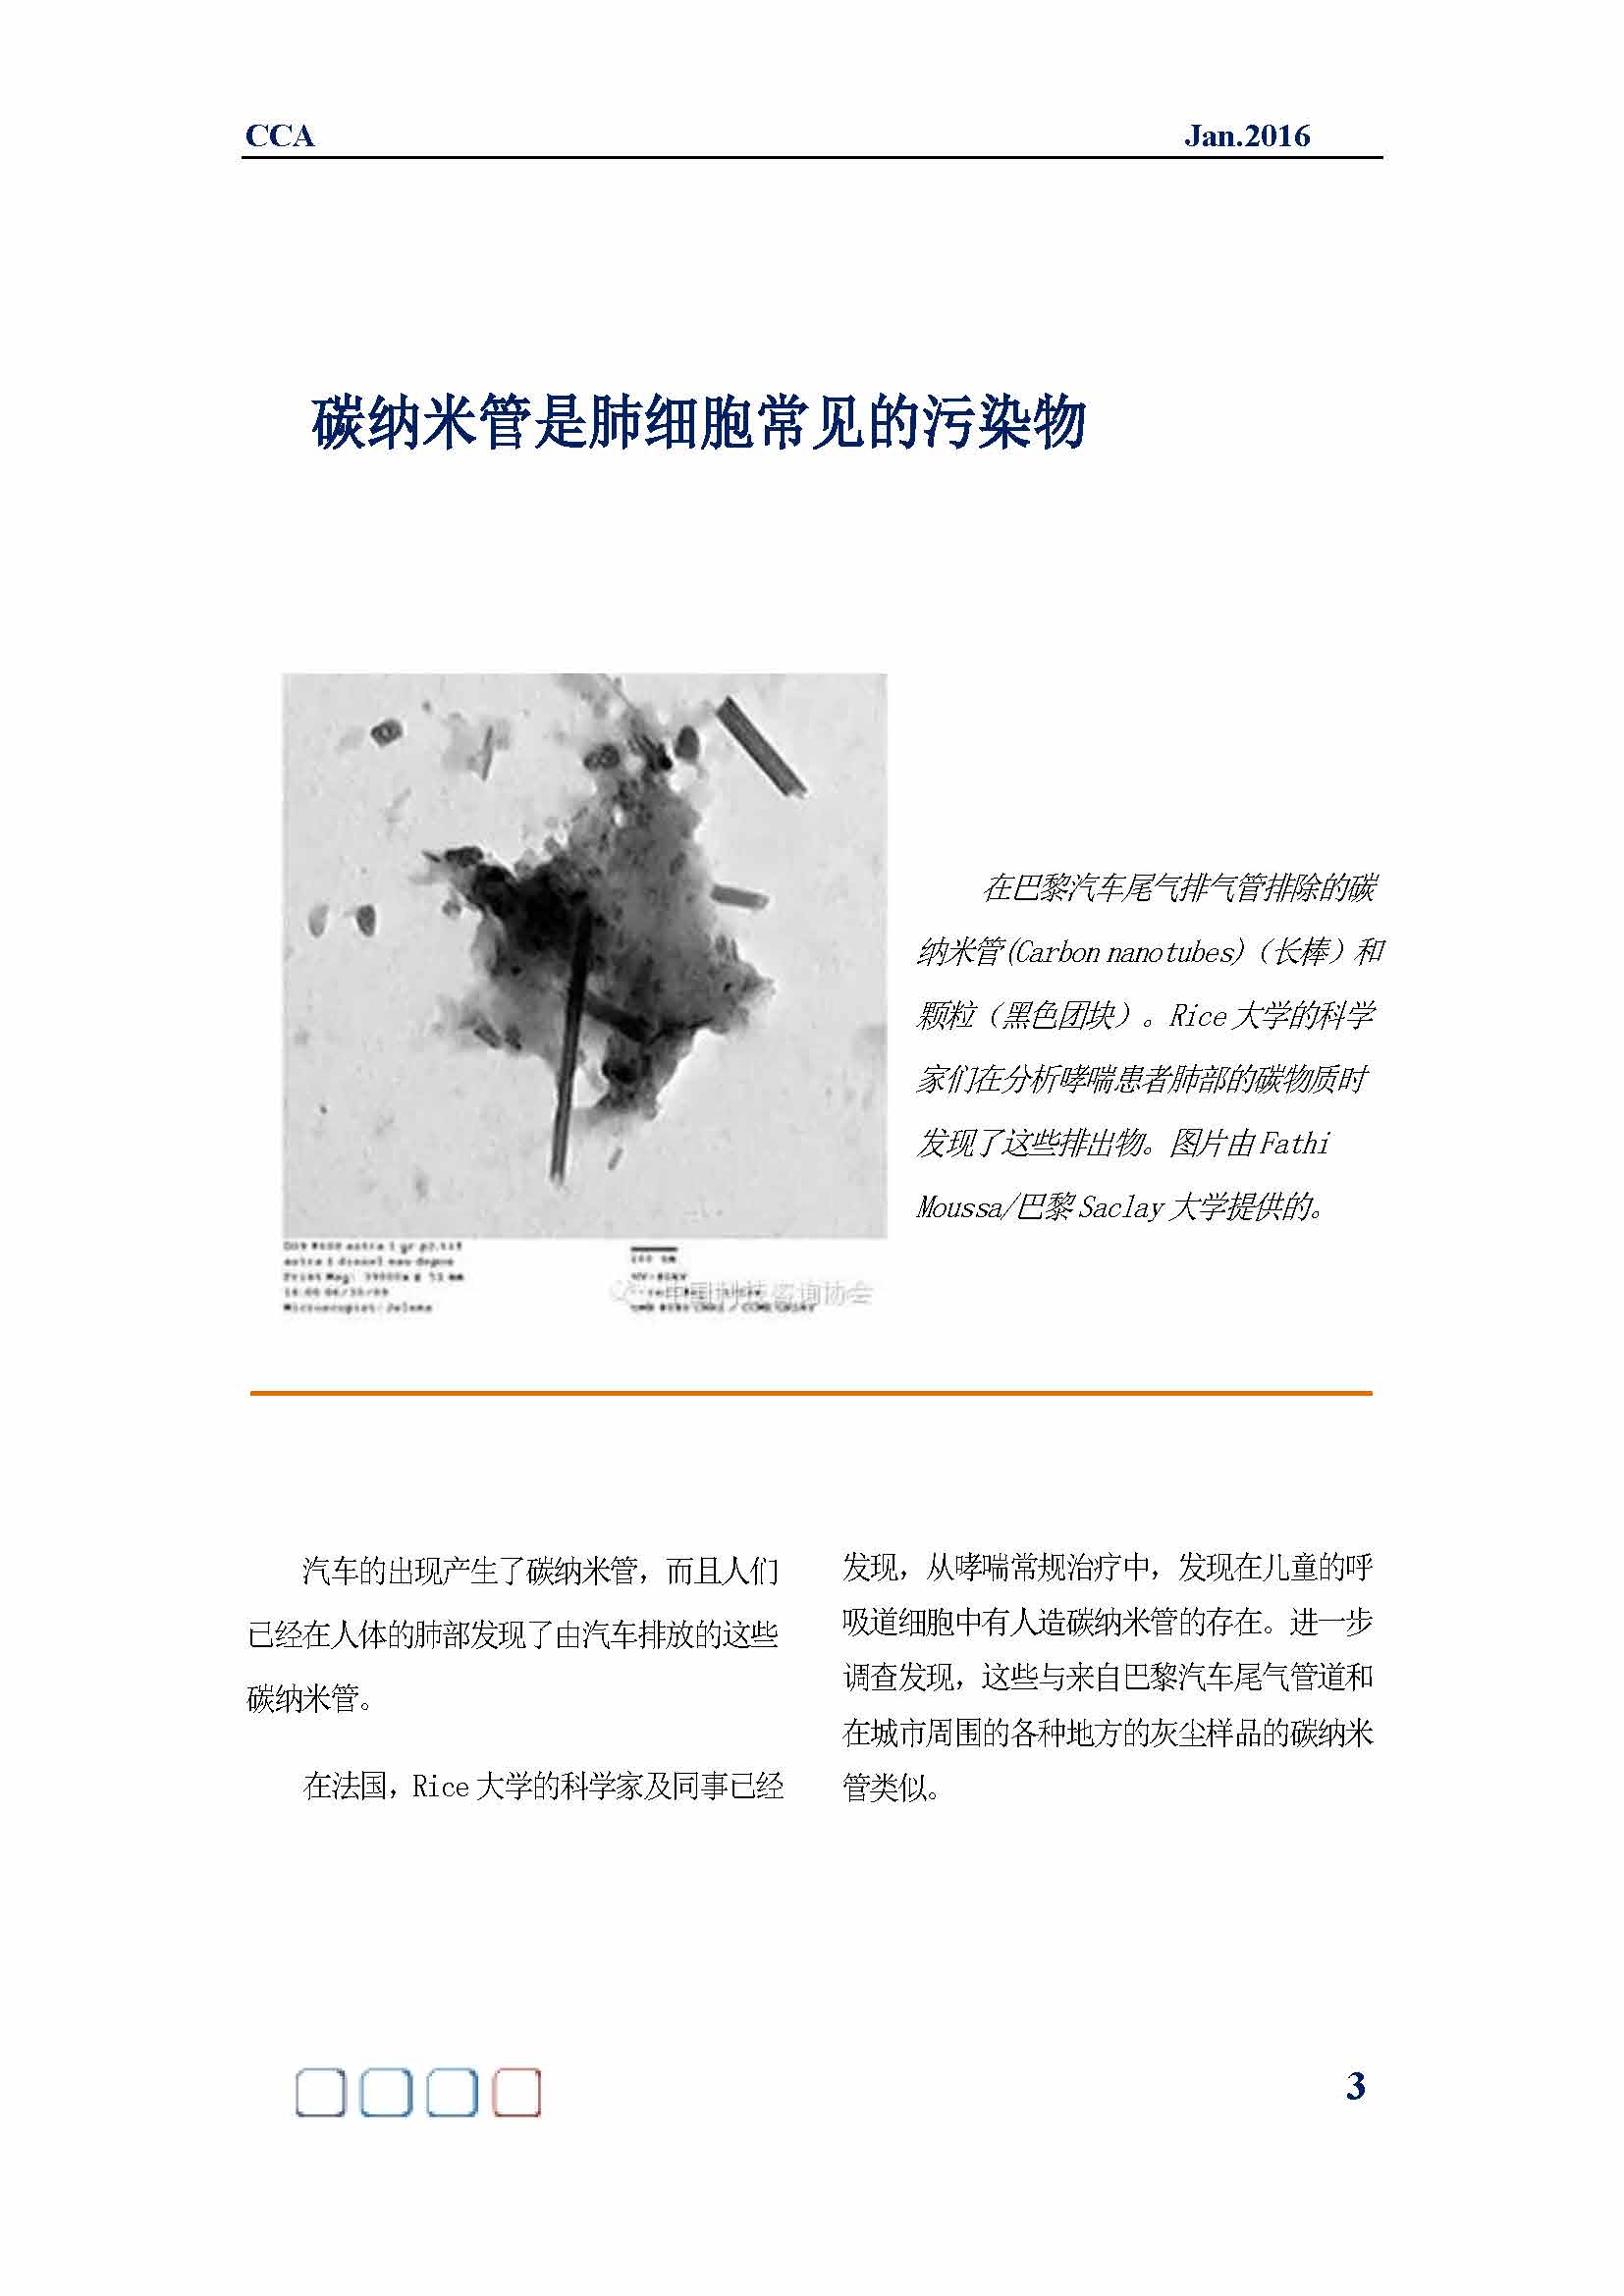 中国科技咨询协会国际快讯（第二十六期）_页面_05.jpg